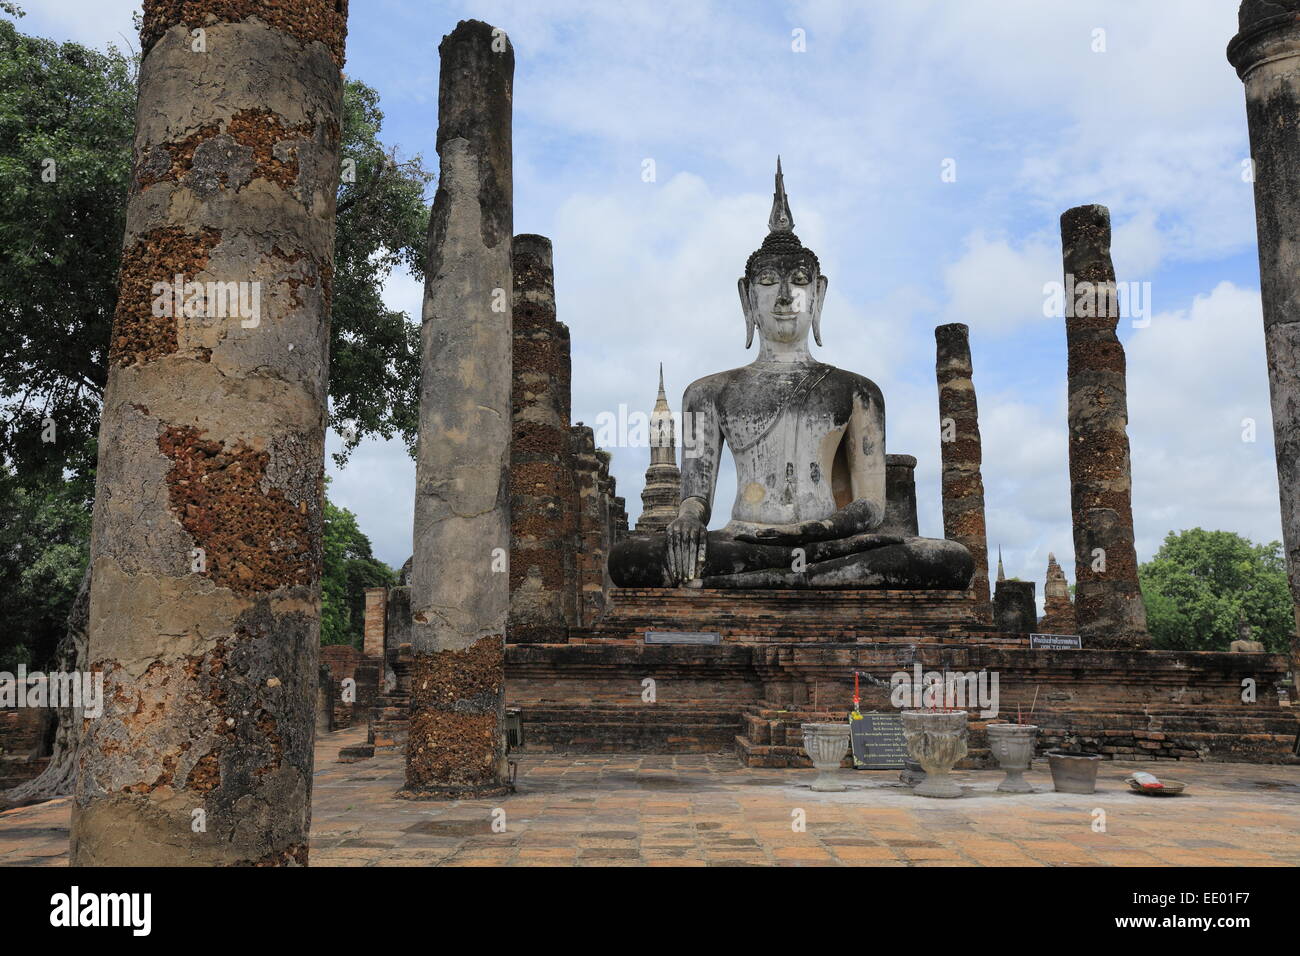 Statue de Bouddha du Wat Mahathat - Parc historique de Sukhothai - Thaïlande Banque D'Images